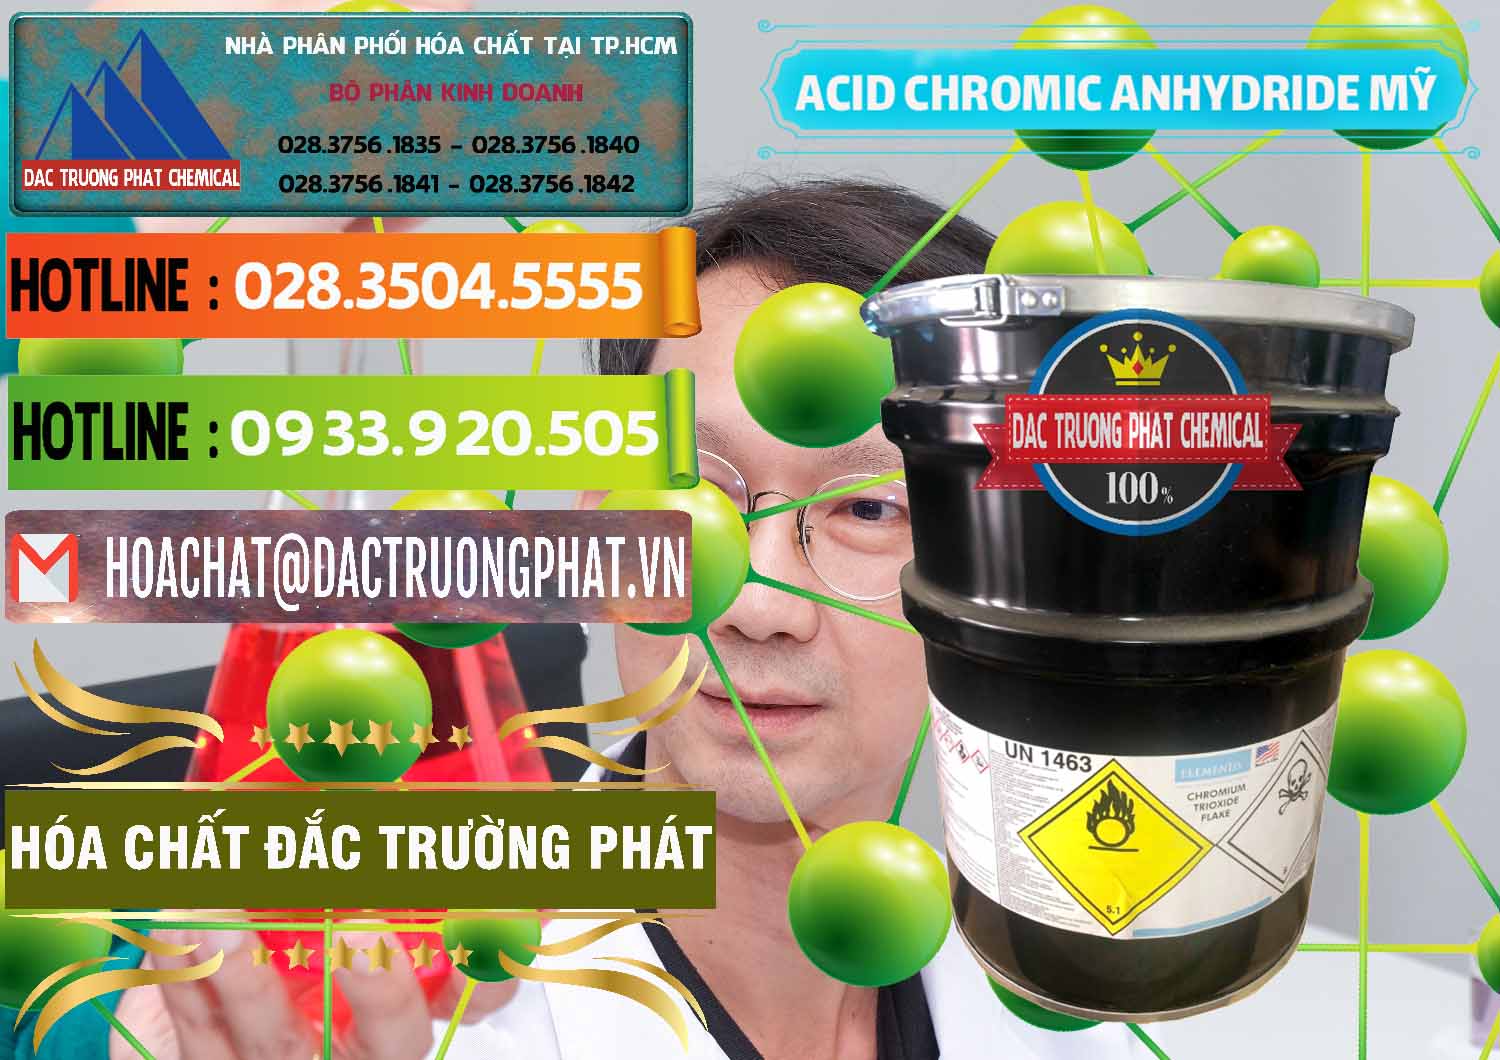 Công ty bán và cung ứng Acid Chromic Anhydride - Cromic CRO3 USA Mỹ - 0364 - Cty cung cấp _ bán hóa chất tại TP.HCM - cungcaphoachat.com.vn